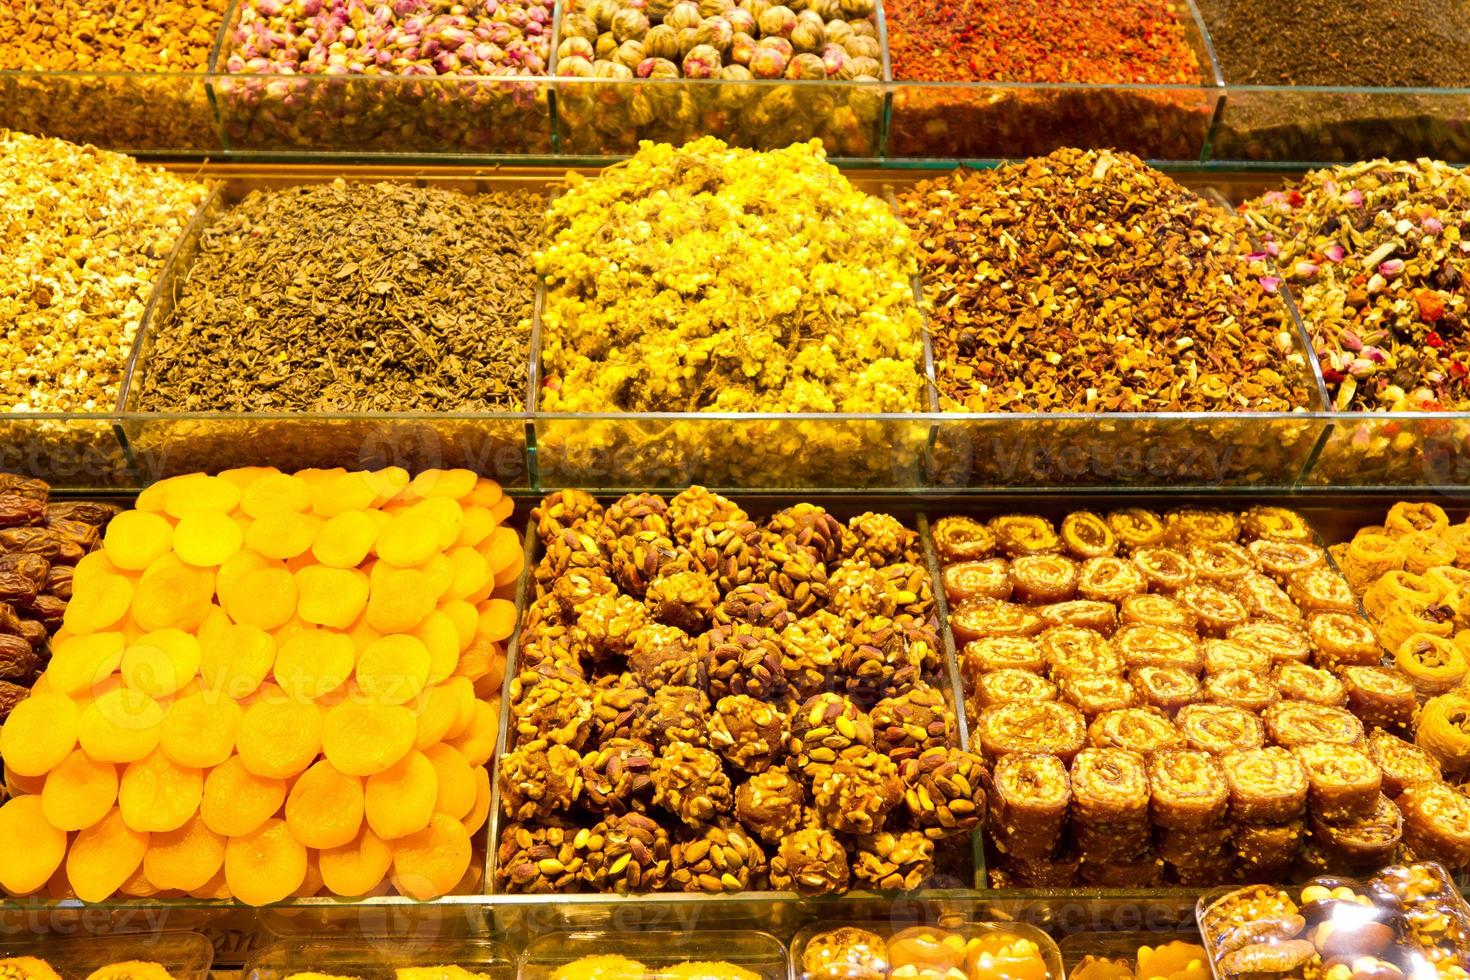 dulces y tés turcos del bazar de especias, estambul foto